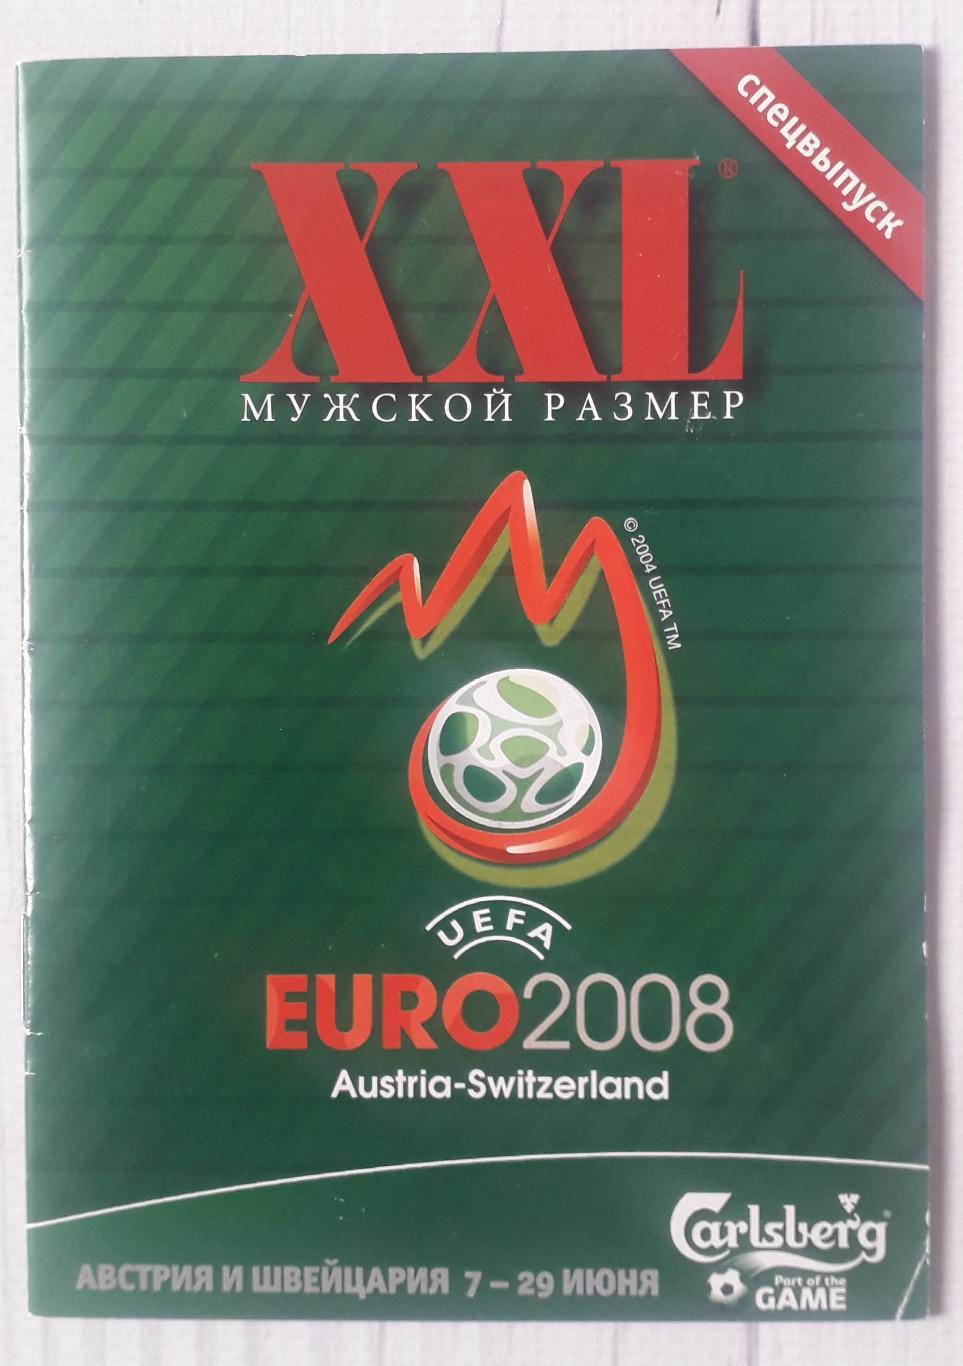 Спецвипуск ХХL. Євро 2008 Австрія-Швейцарія.